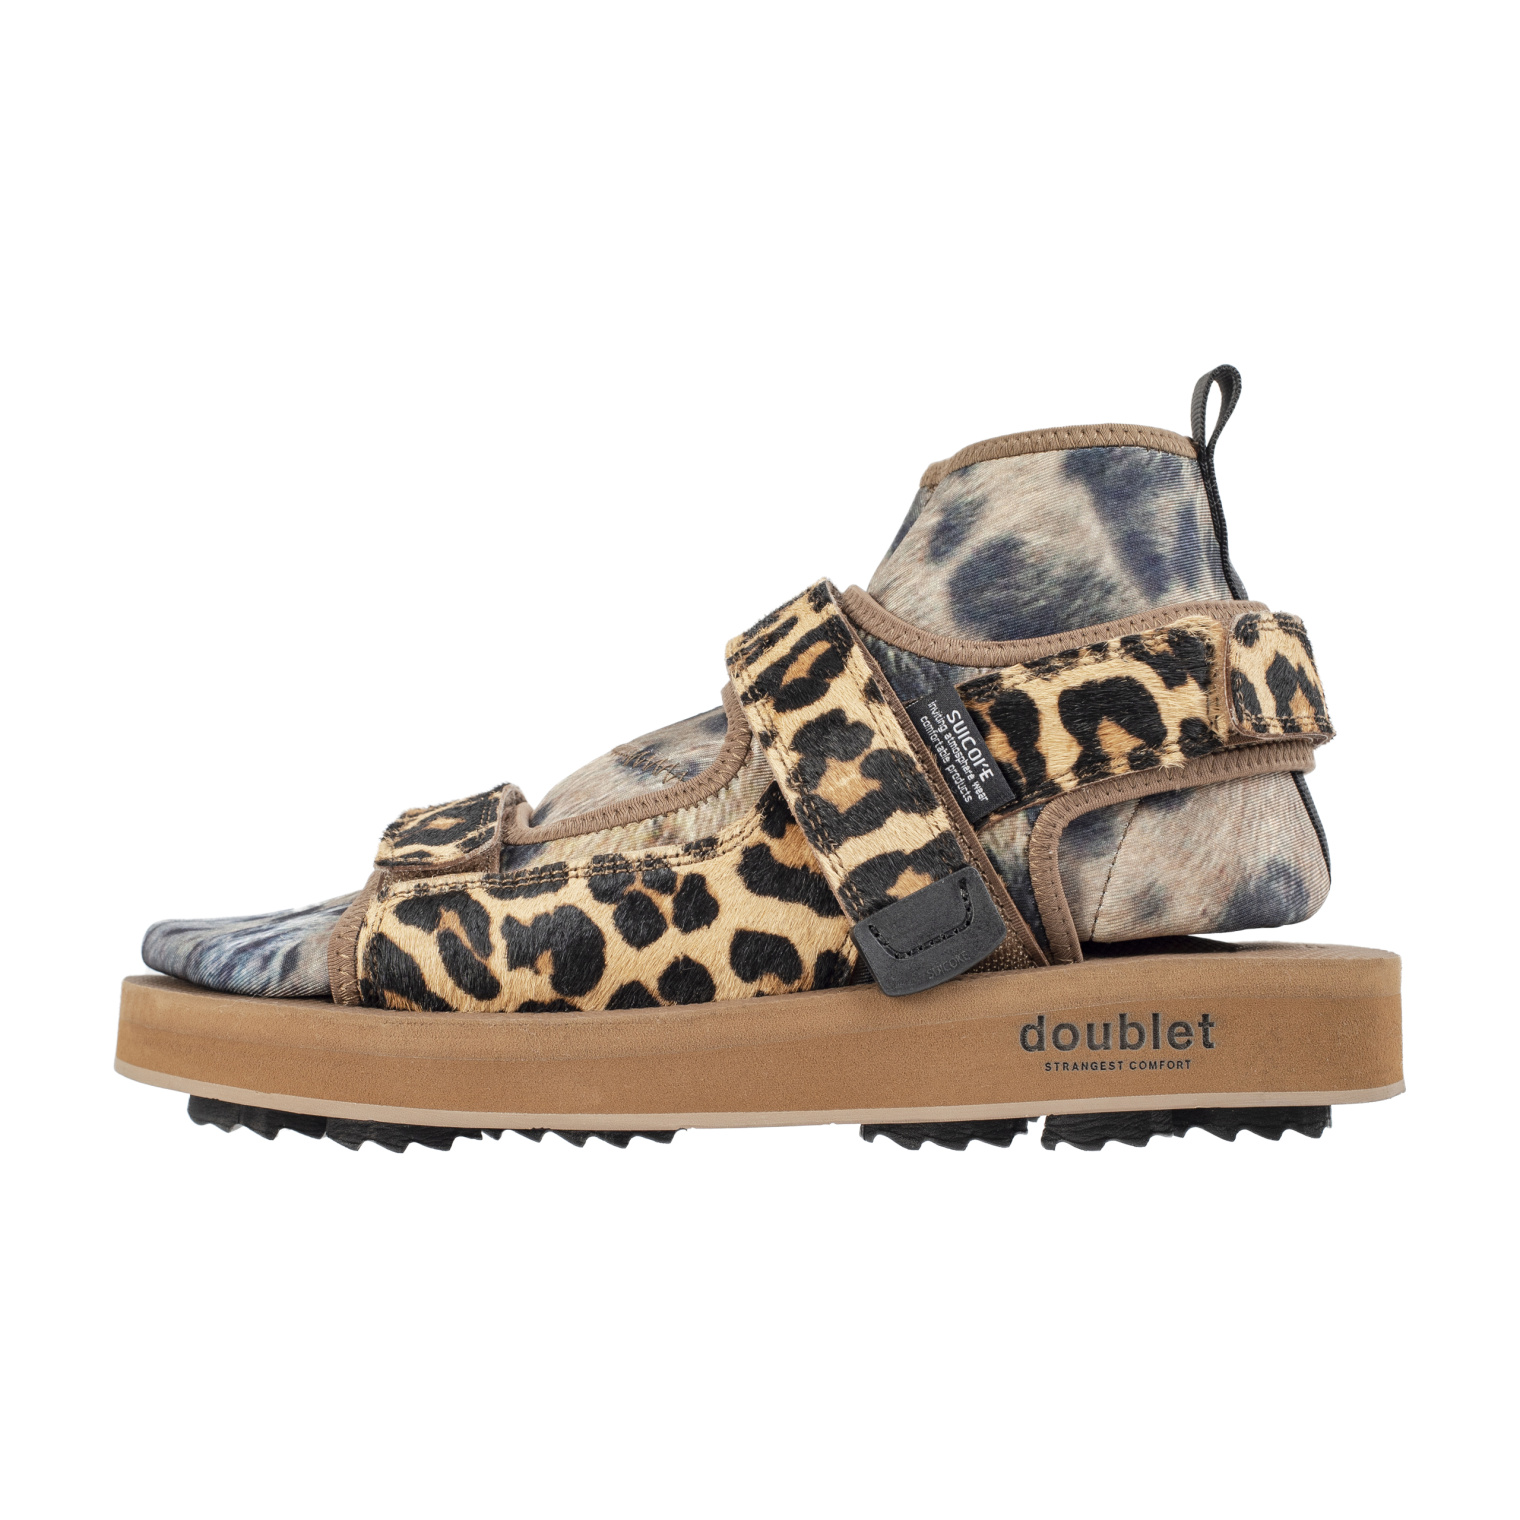 Doublet Doublet x Suicoke Animal foot Leopard Sandals